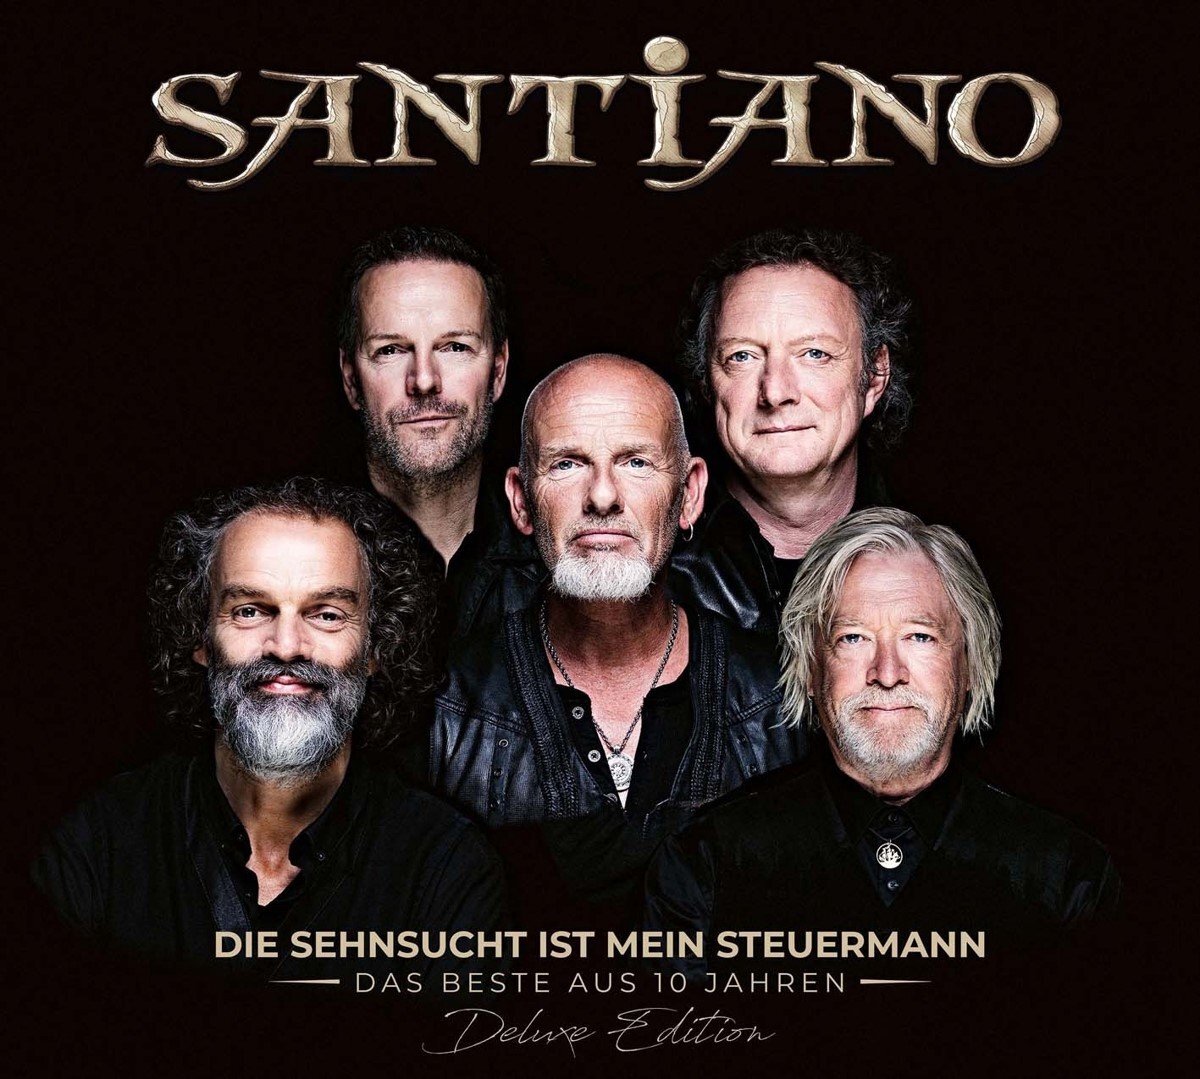 Universal Music Nederland Santiano - Die Sehnsucht Ist Mein Steuermann - Das Beste Aus (CD) (Deluxe Edition)